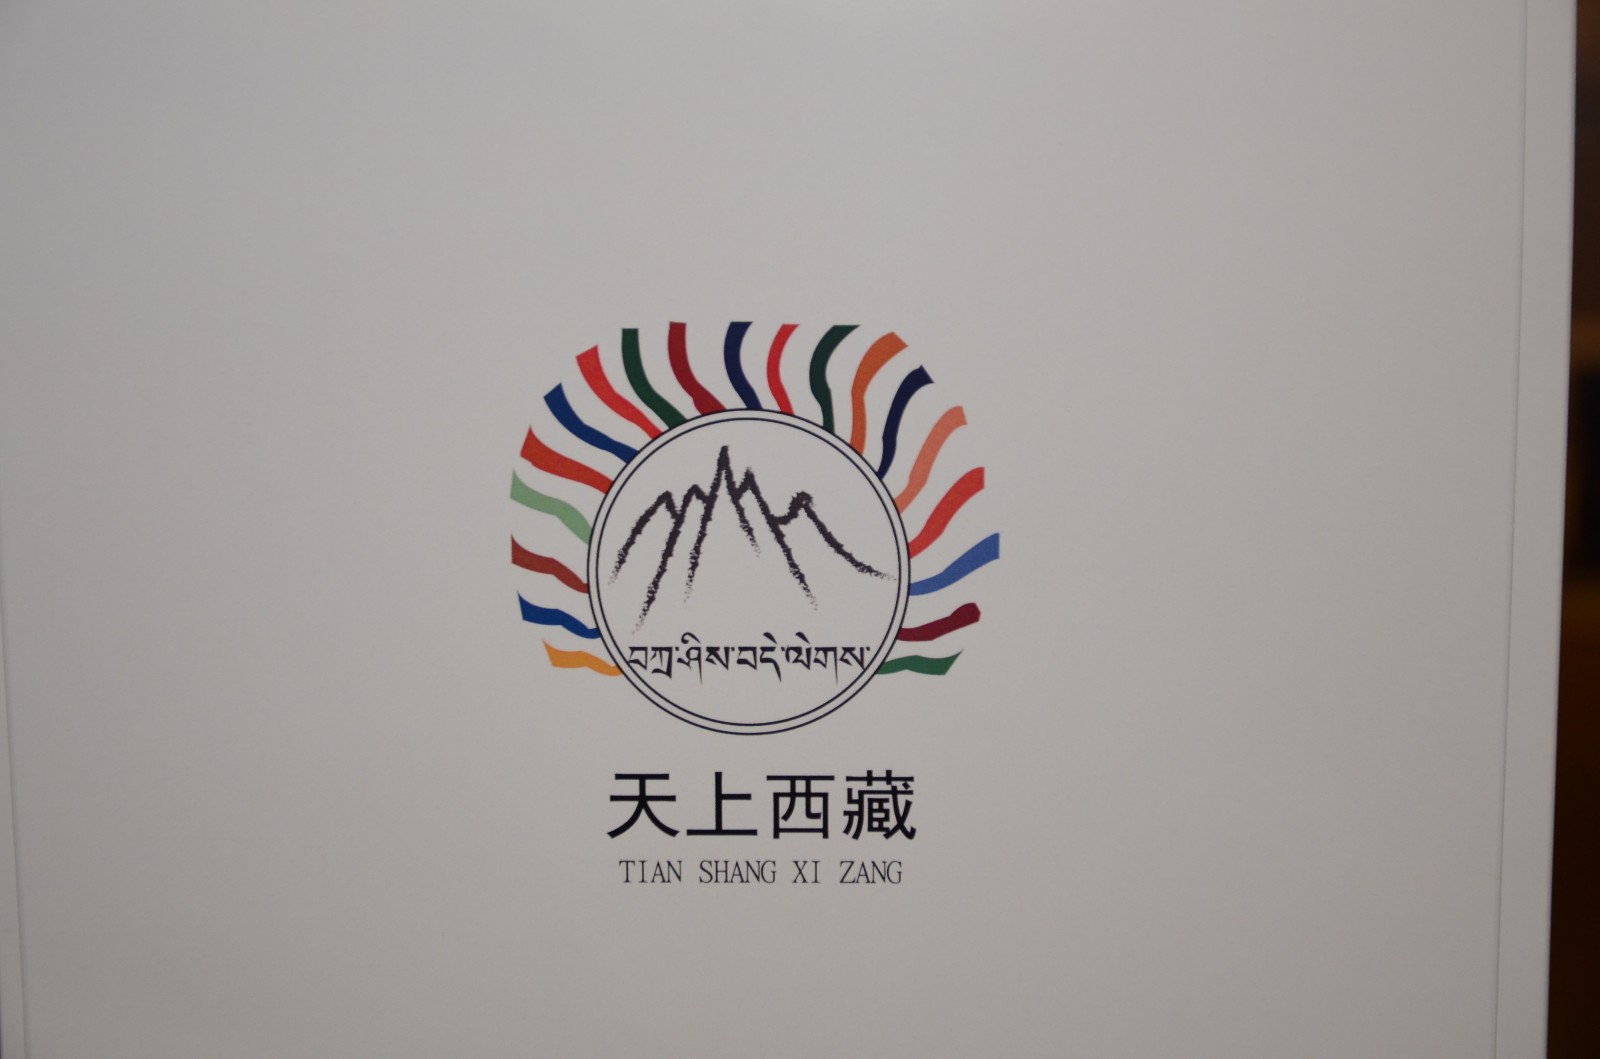 西藏旅游logo设计,摄影图片大赛颁奖典礼举行